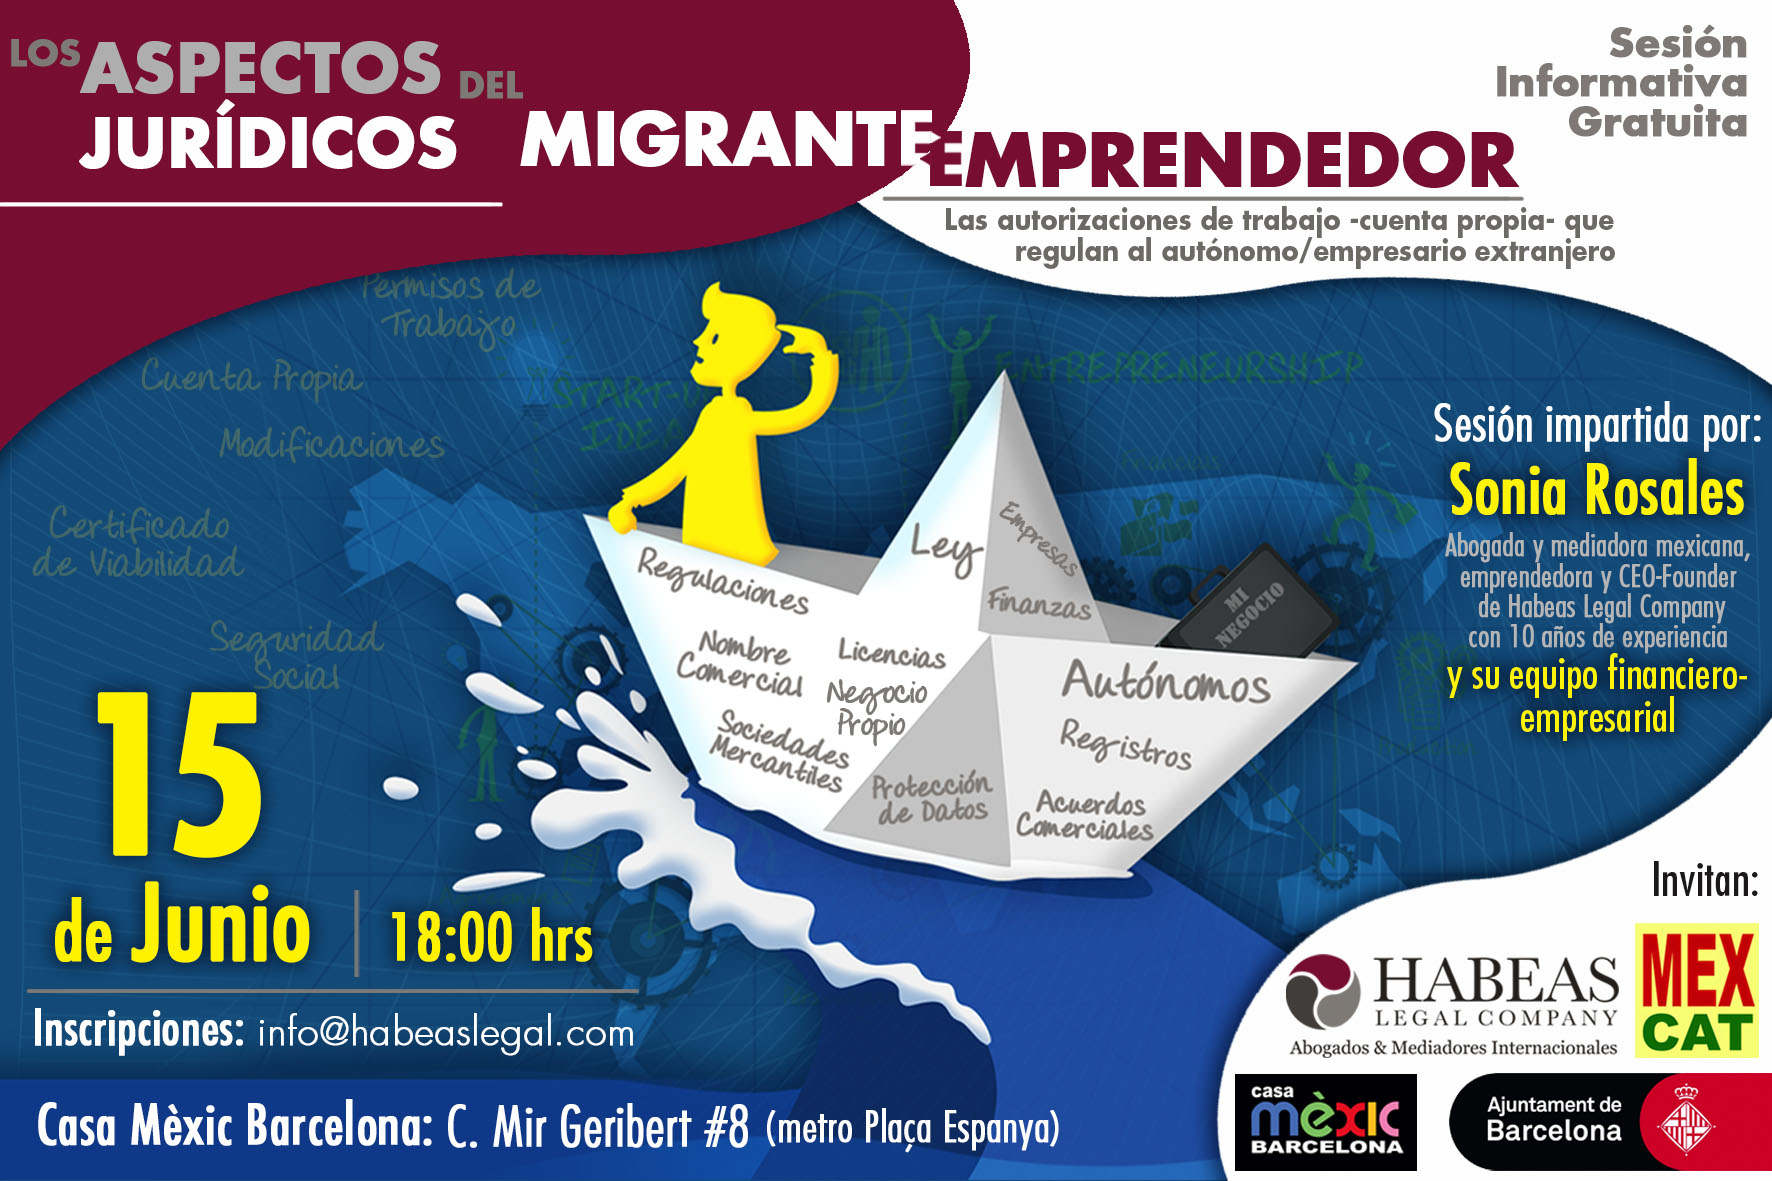 Aspectos Jurídicos Emprendedor Habeas MEXCAT JUN - "Los aspectos jurídicos del migrante emprendedor": sesión informativa gratuita -Junio-